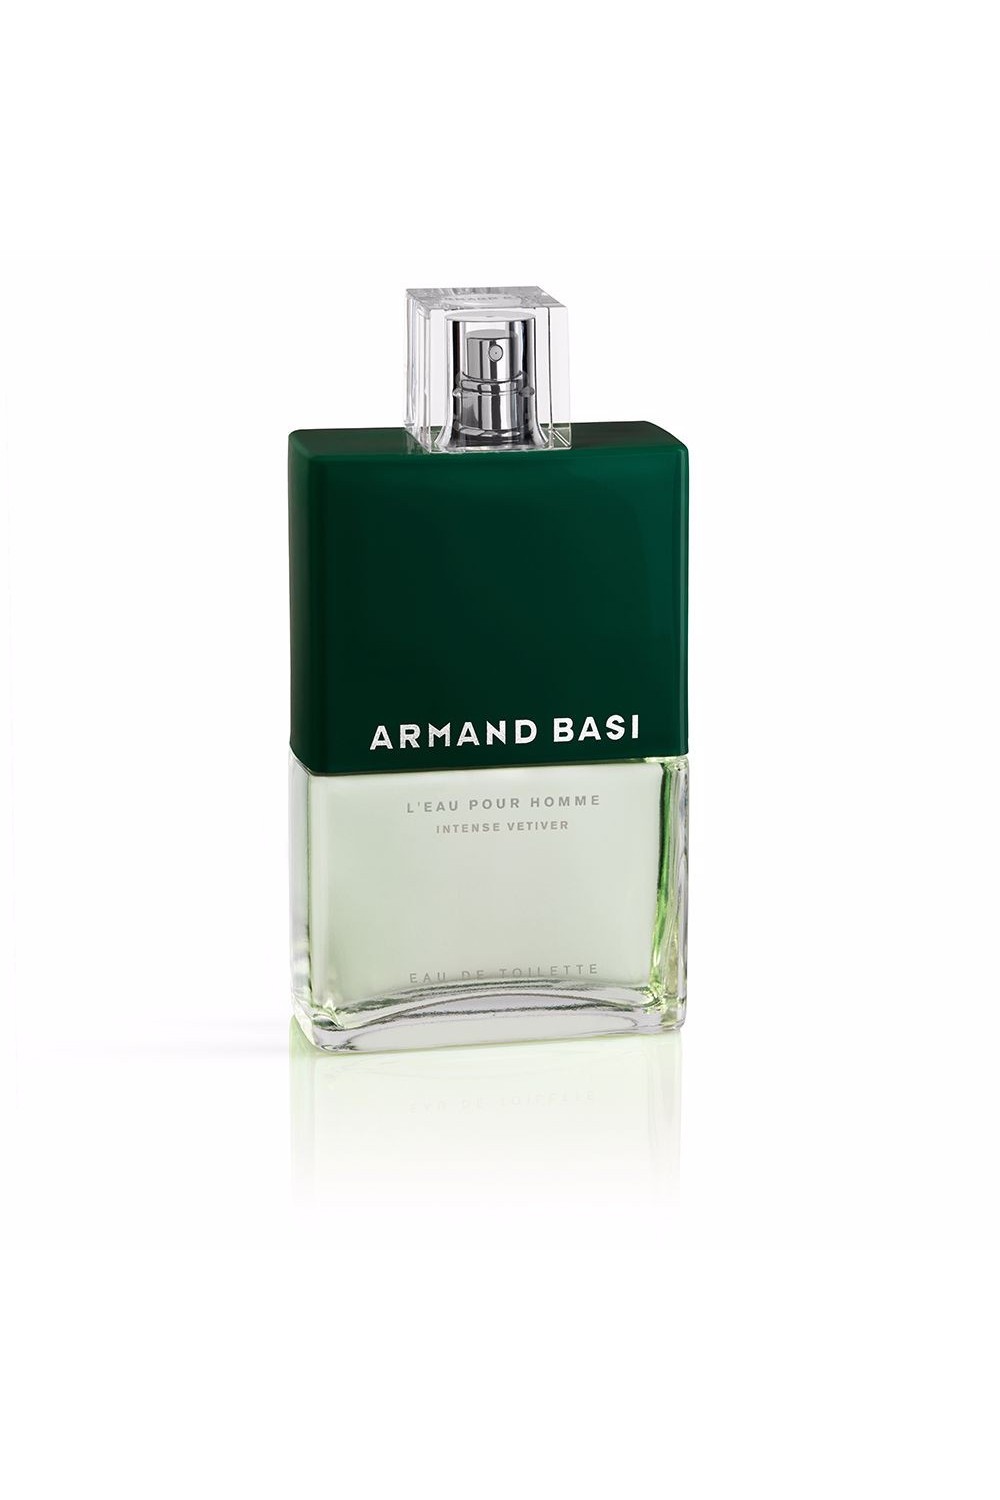 ARMAND BASI - Armand Bassi L'Eau Pour Homme Intense Vetiver Eau De Toilette Spray 125ml